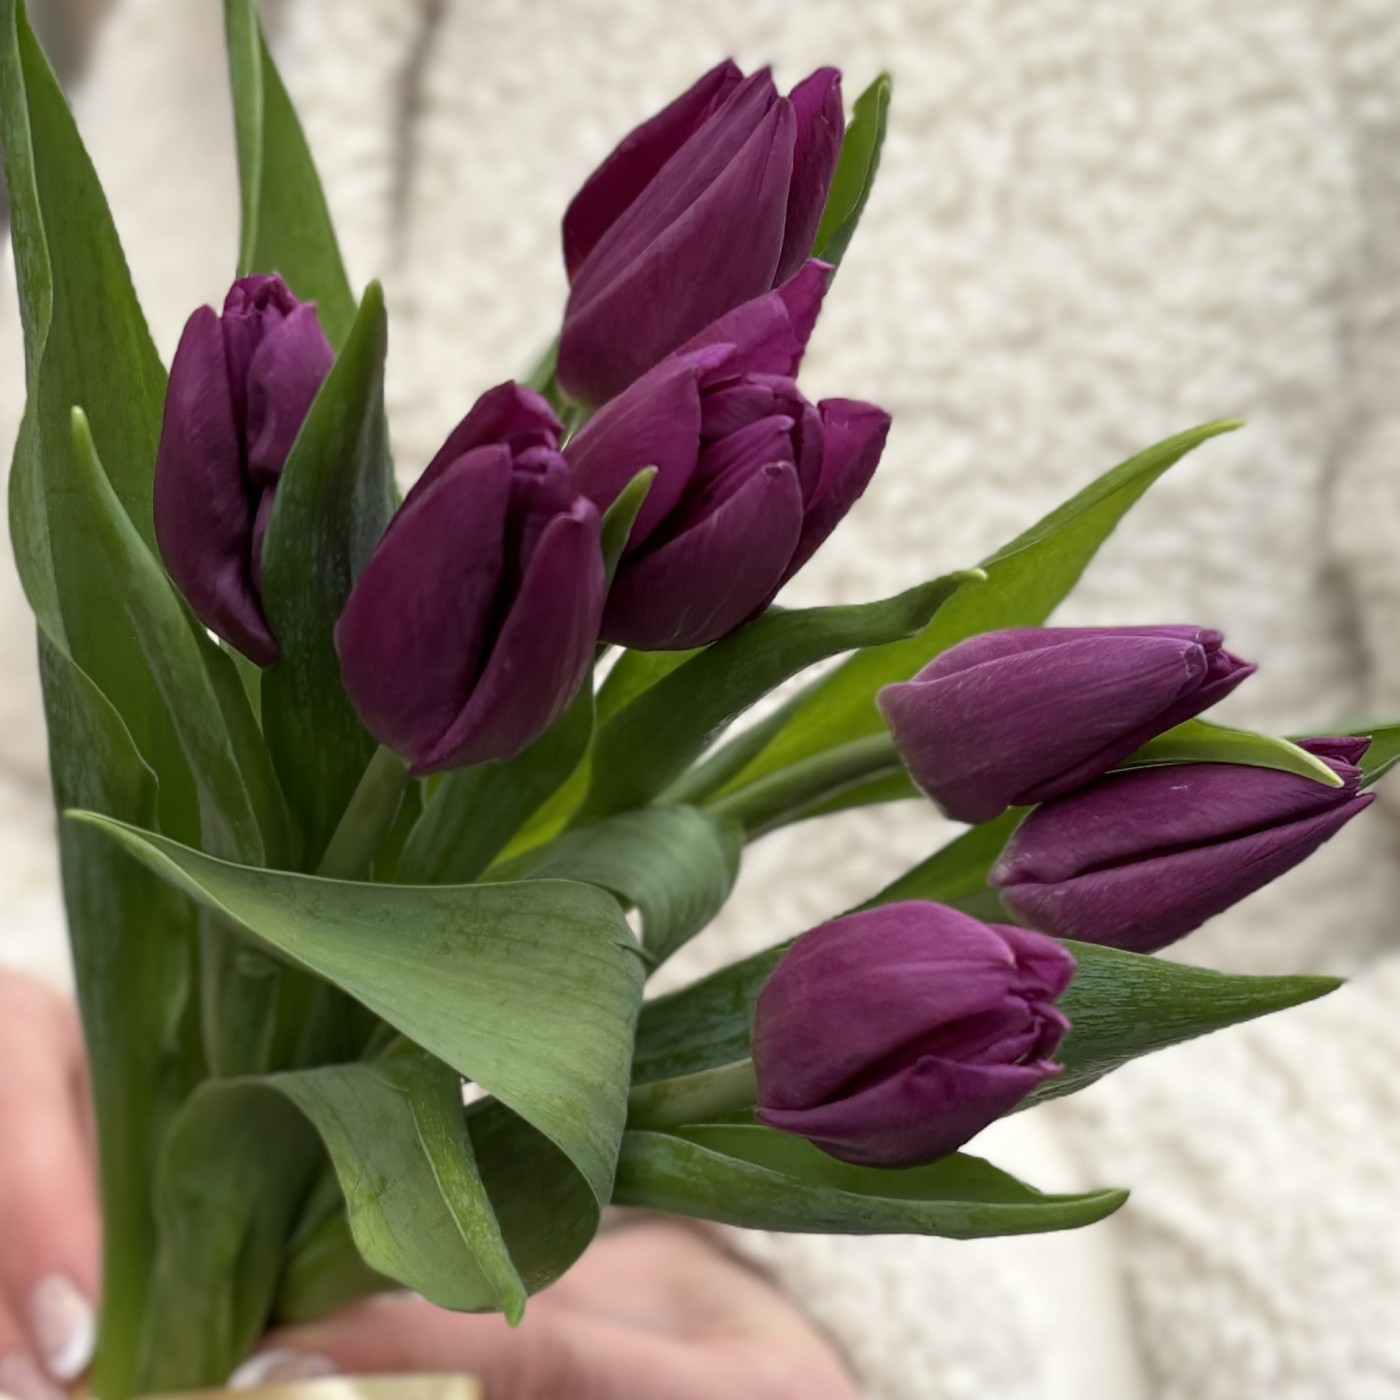 7 фиолетовых тюльпанов